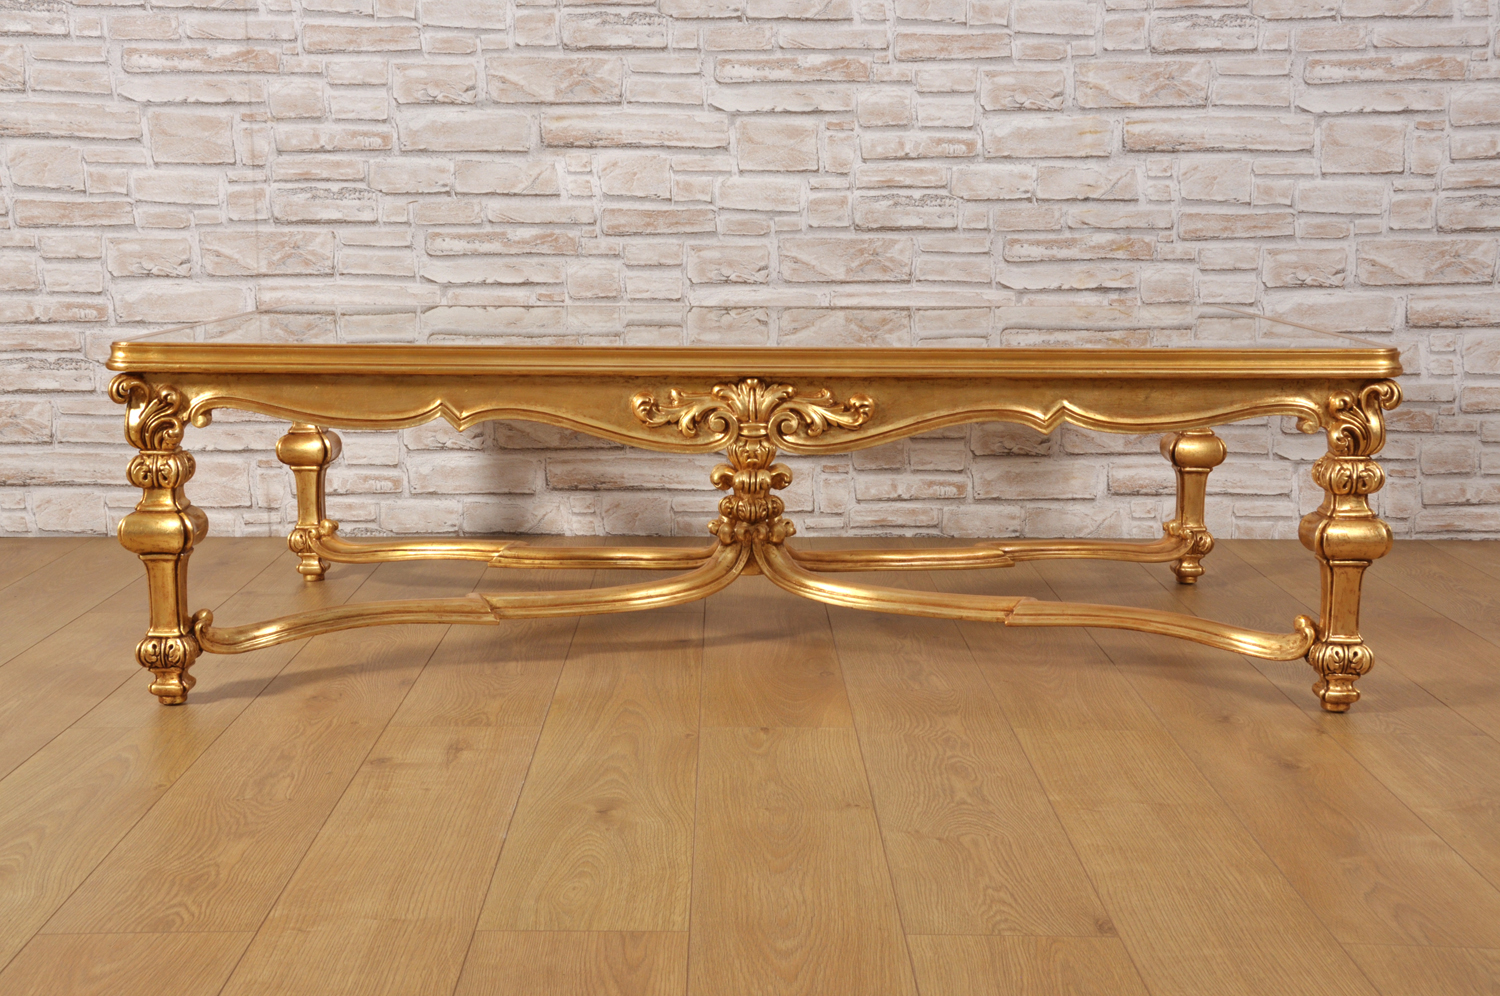 tavolo intagliato di grandi dimensioni rettangolare con le 4 gambe scolpite a mano piano in cristallo manufatto made in Italy di lusso